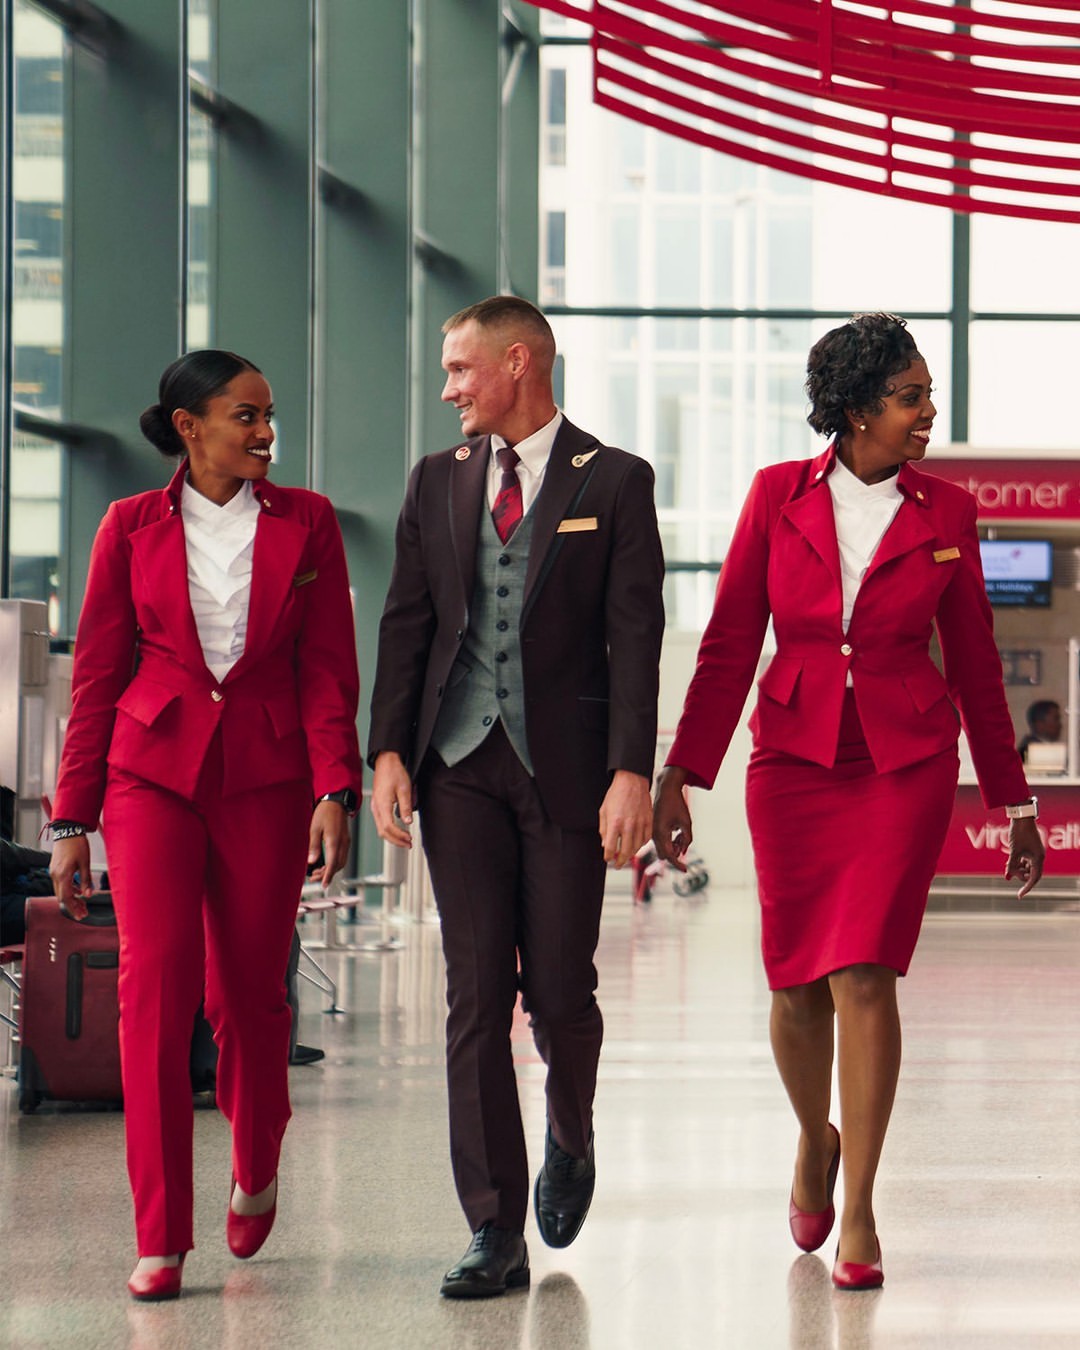 Virgin Atlantic uniforms designed by Vivienne Westwood in 2014